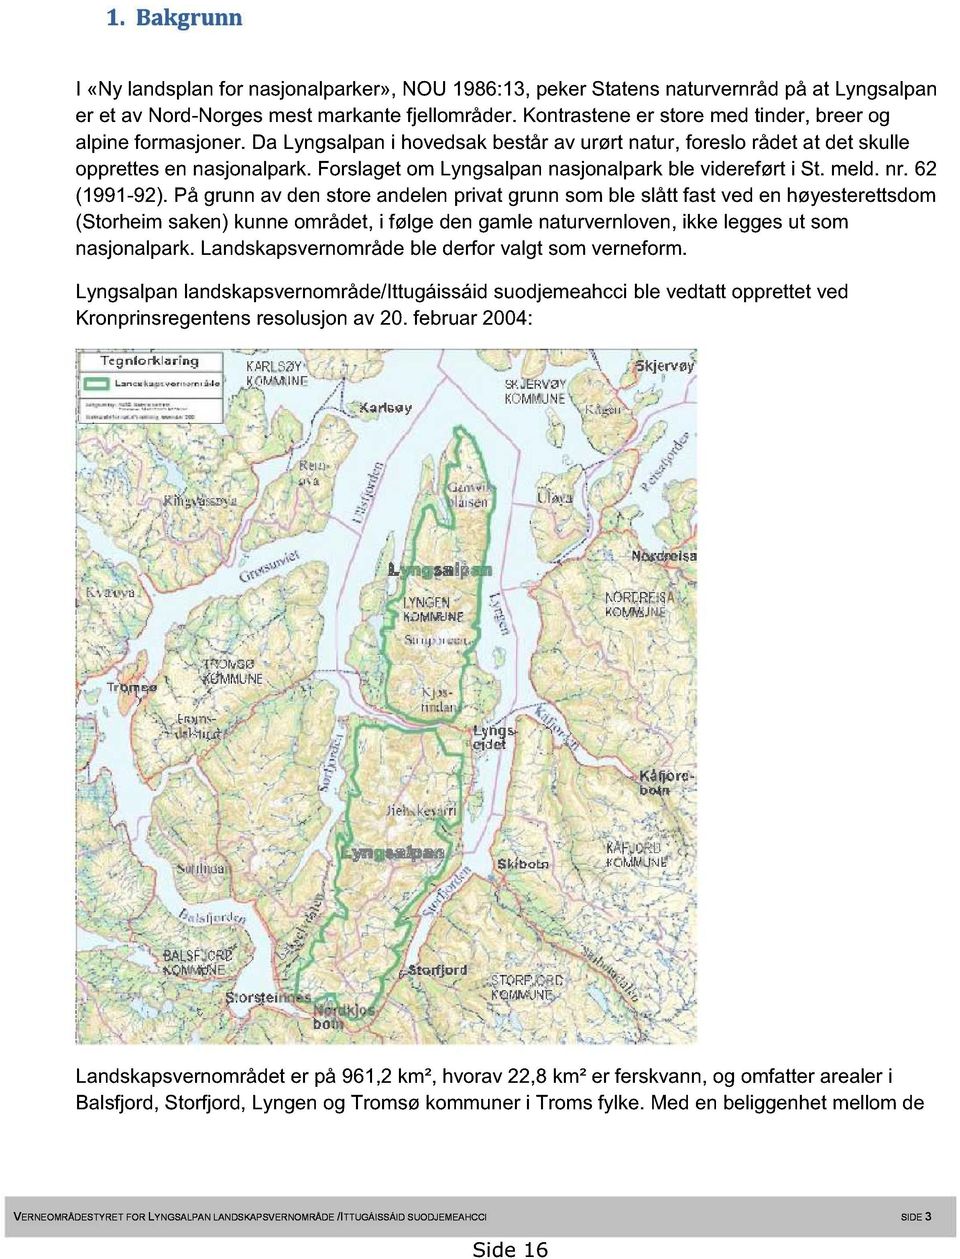 Forslaget om Lyngsalpan nasjonalpark ble videreført i St. meld. nr. 62 (1991-92).